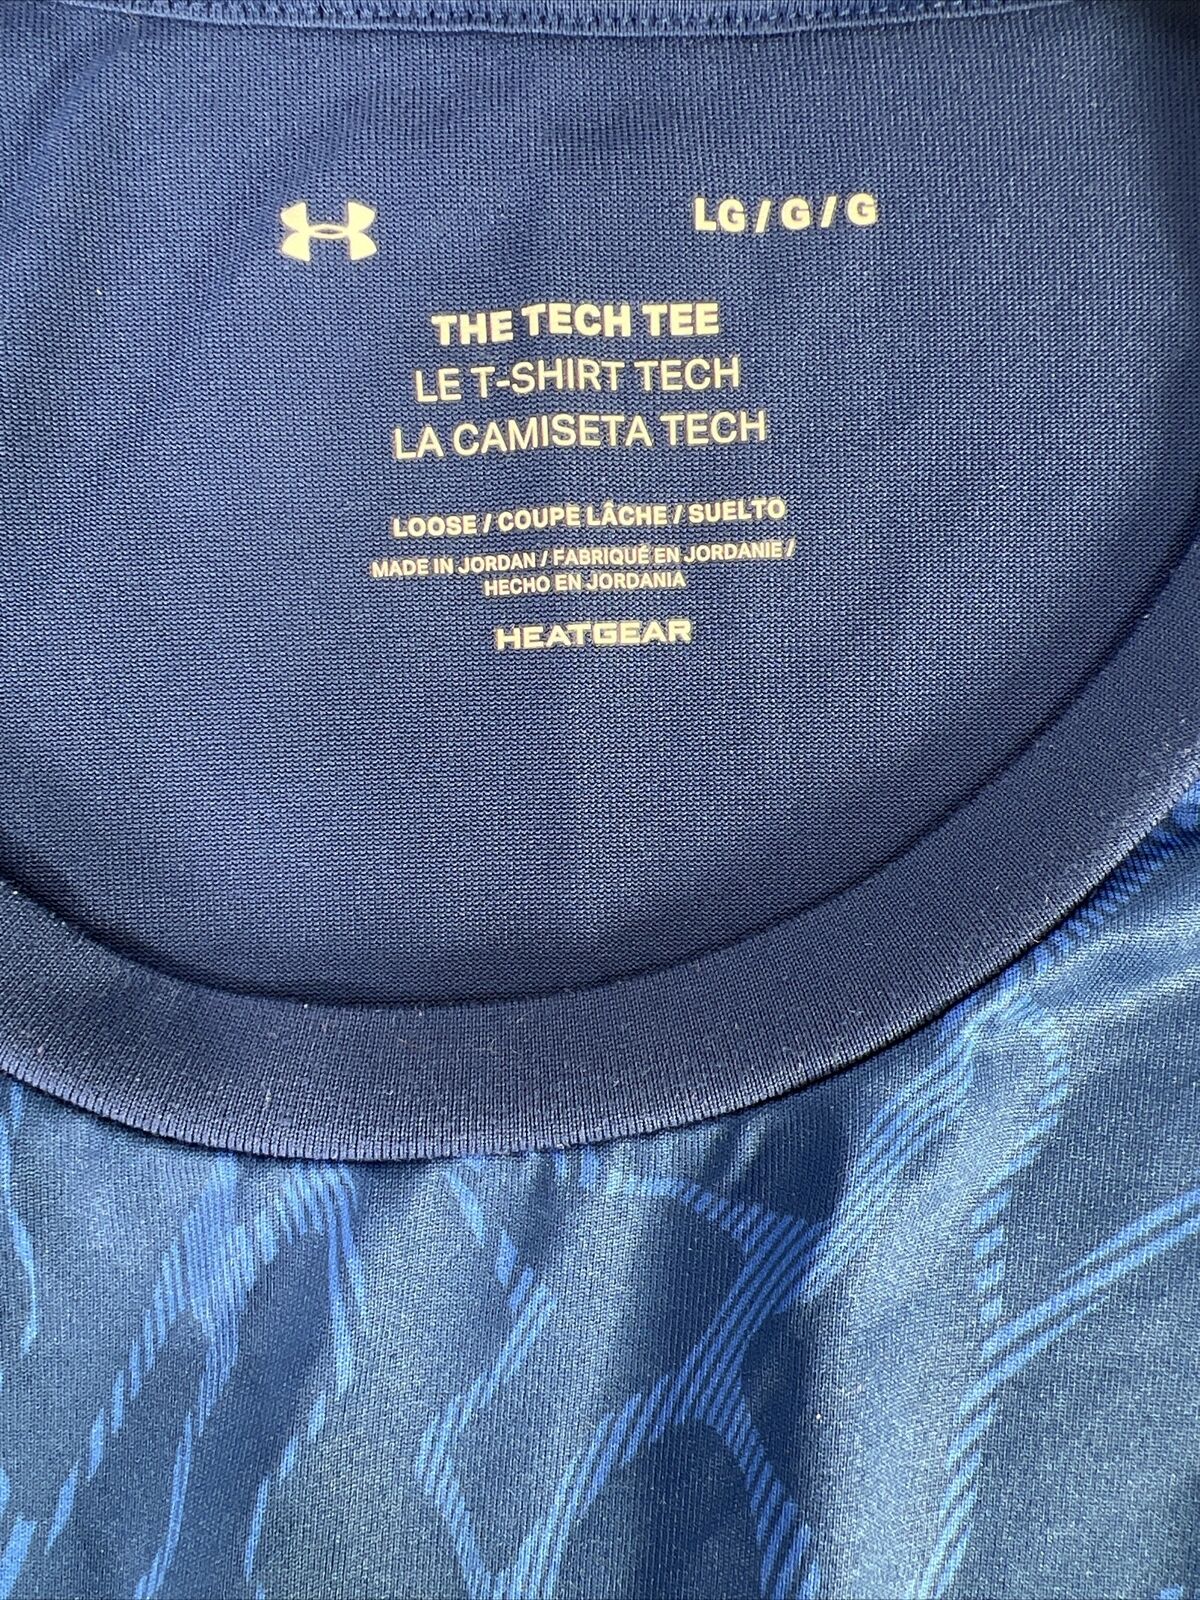 Under Armour Men's Blue The Tech Shirt Short Sleeve - L